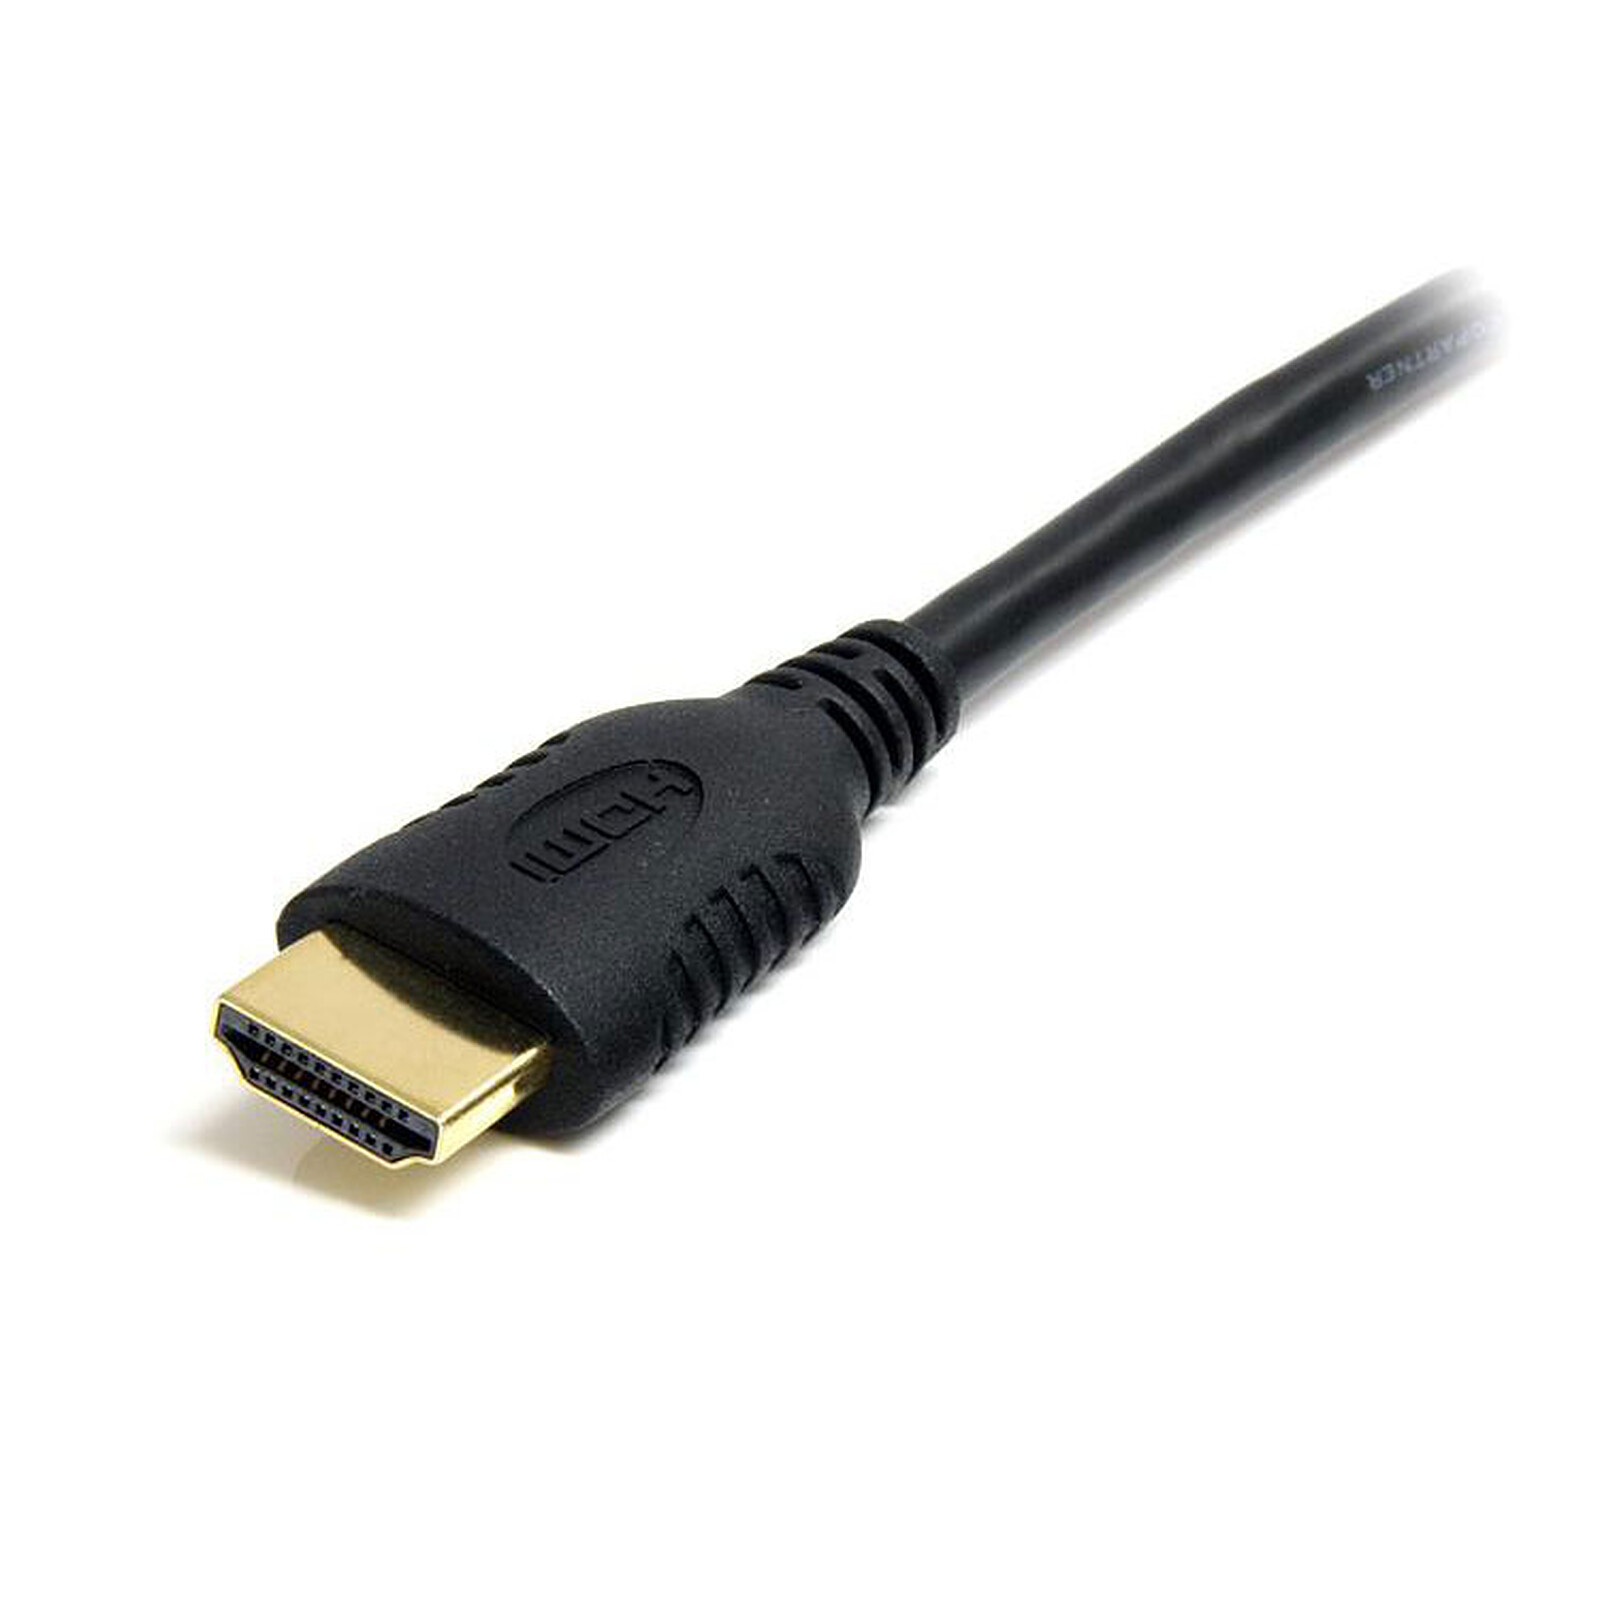 Câble HDMI 1.4 Ethernet Channel Coudé mâle/mâle Noir - (3 mètres)